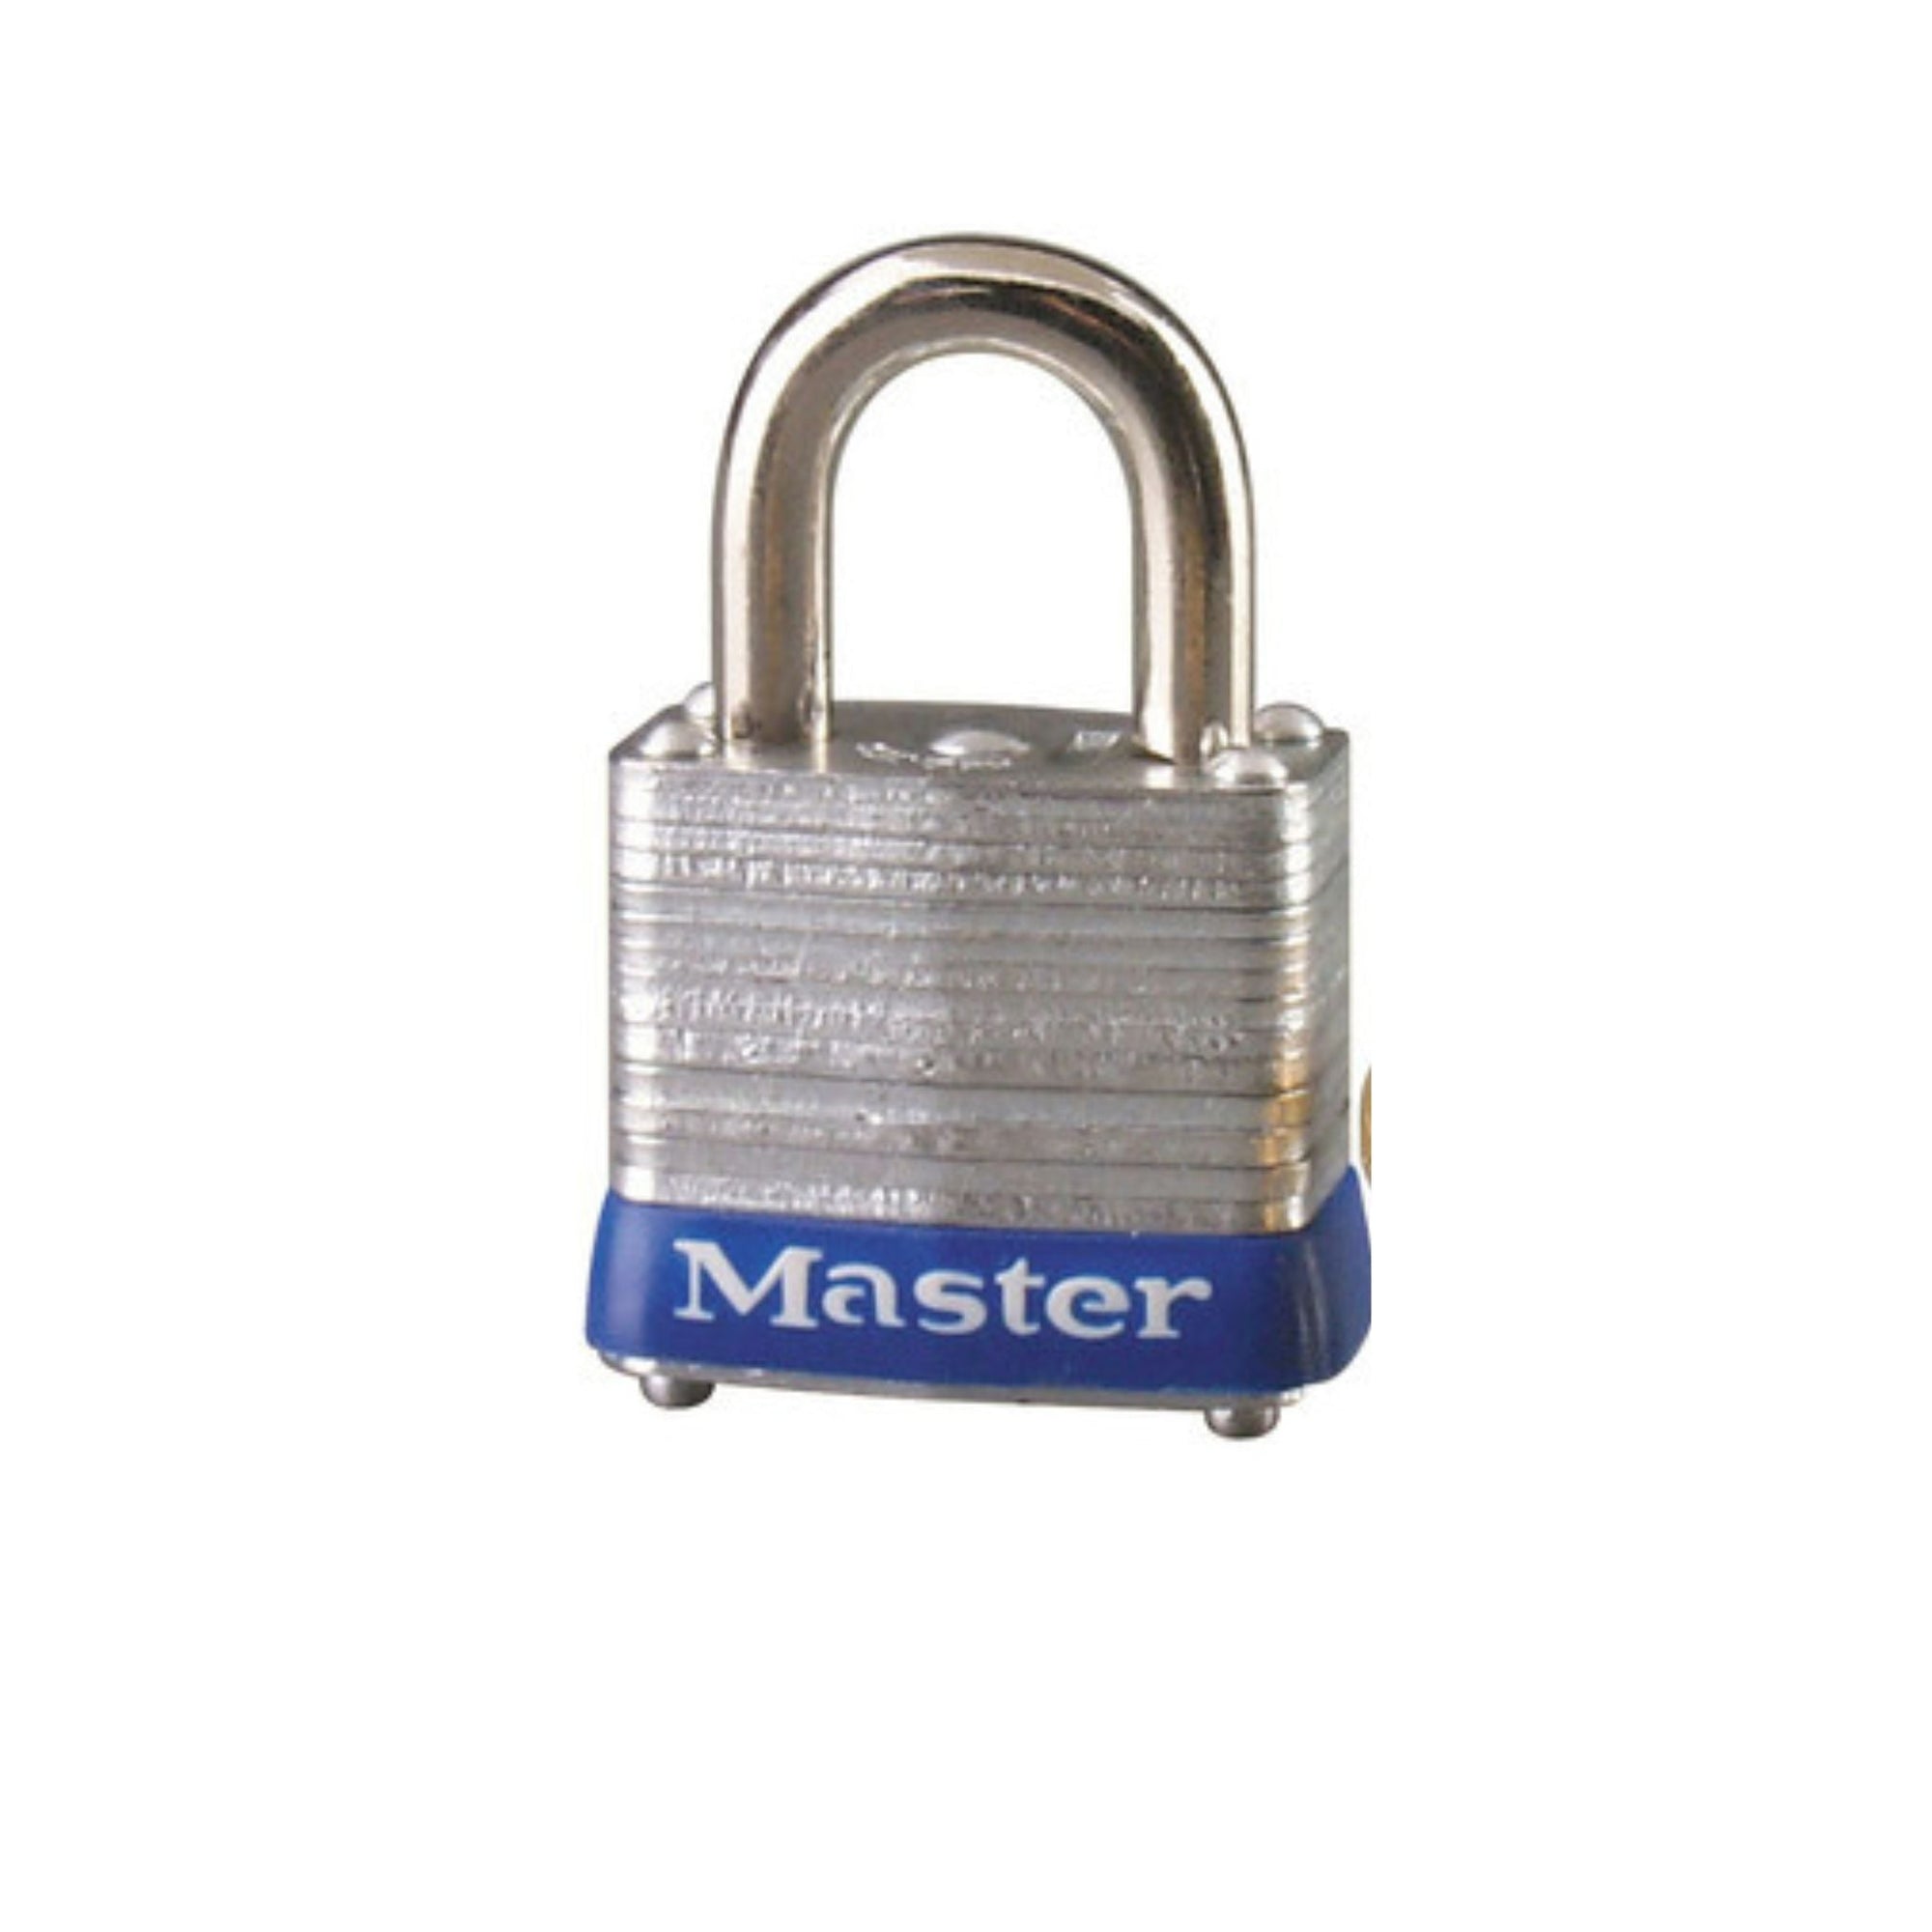 Master Lock 7KA P106 Lock Laminated steel No. 7 Series Padlock Keyed to Match Existing Key Number KAP106 - The Lock Source